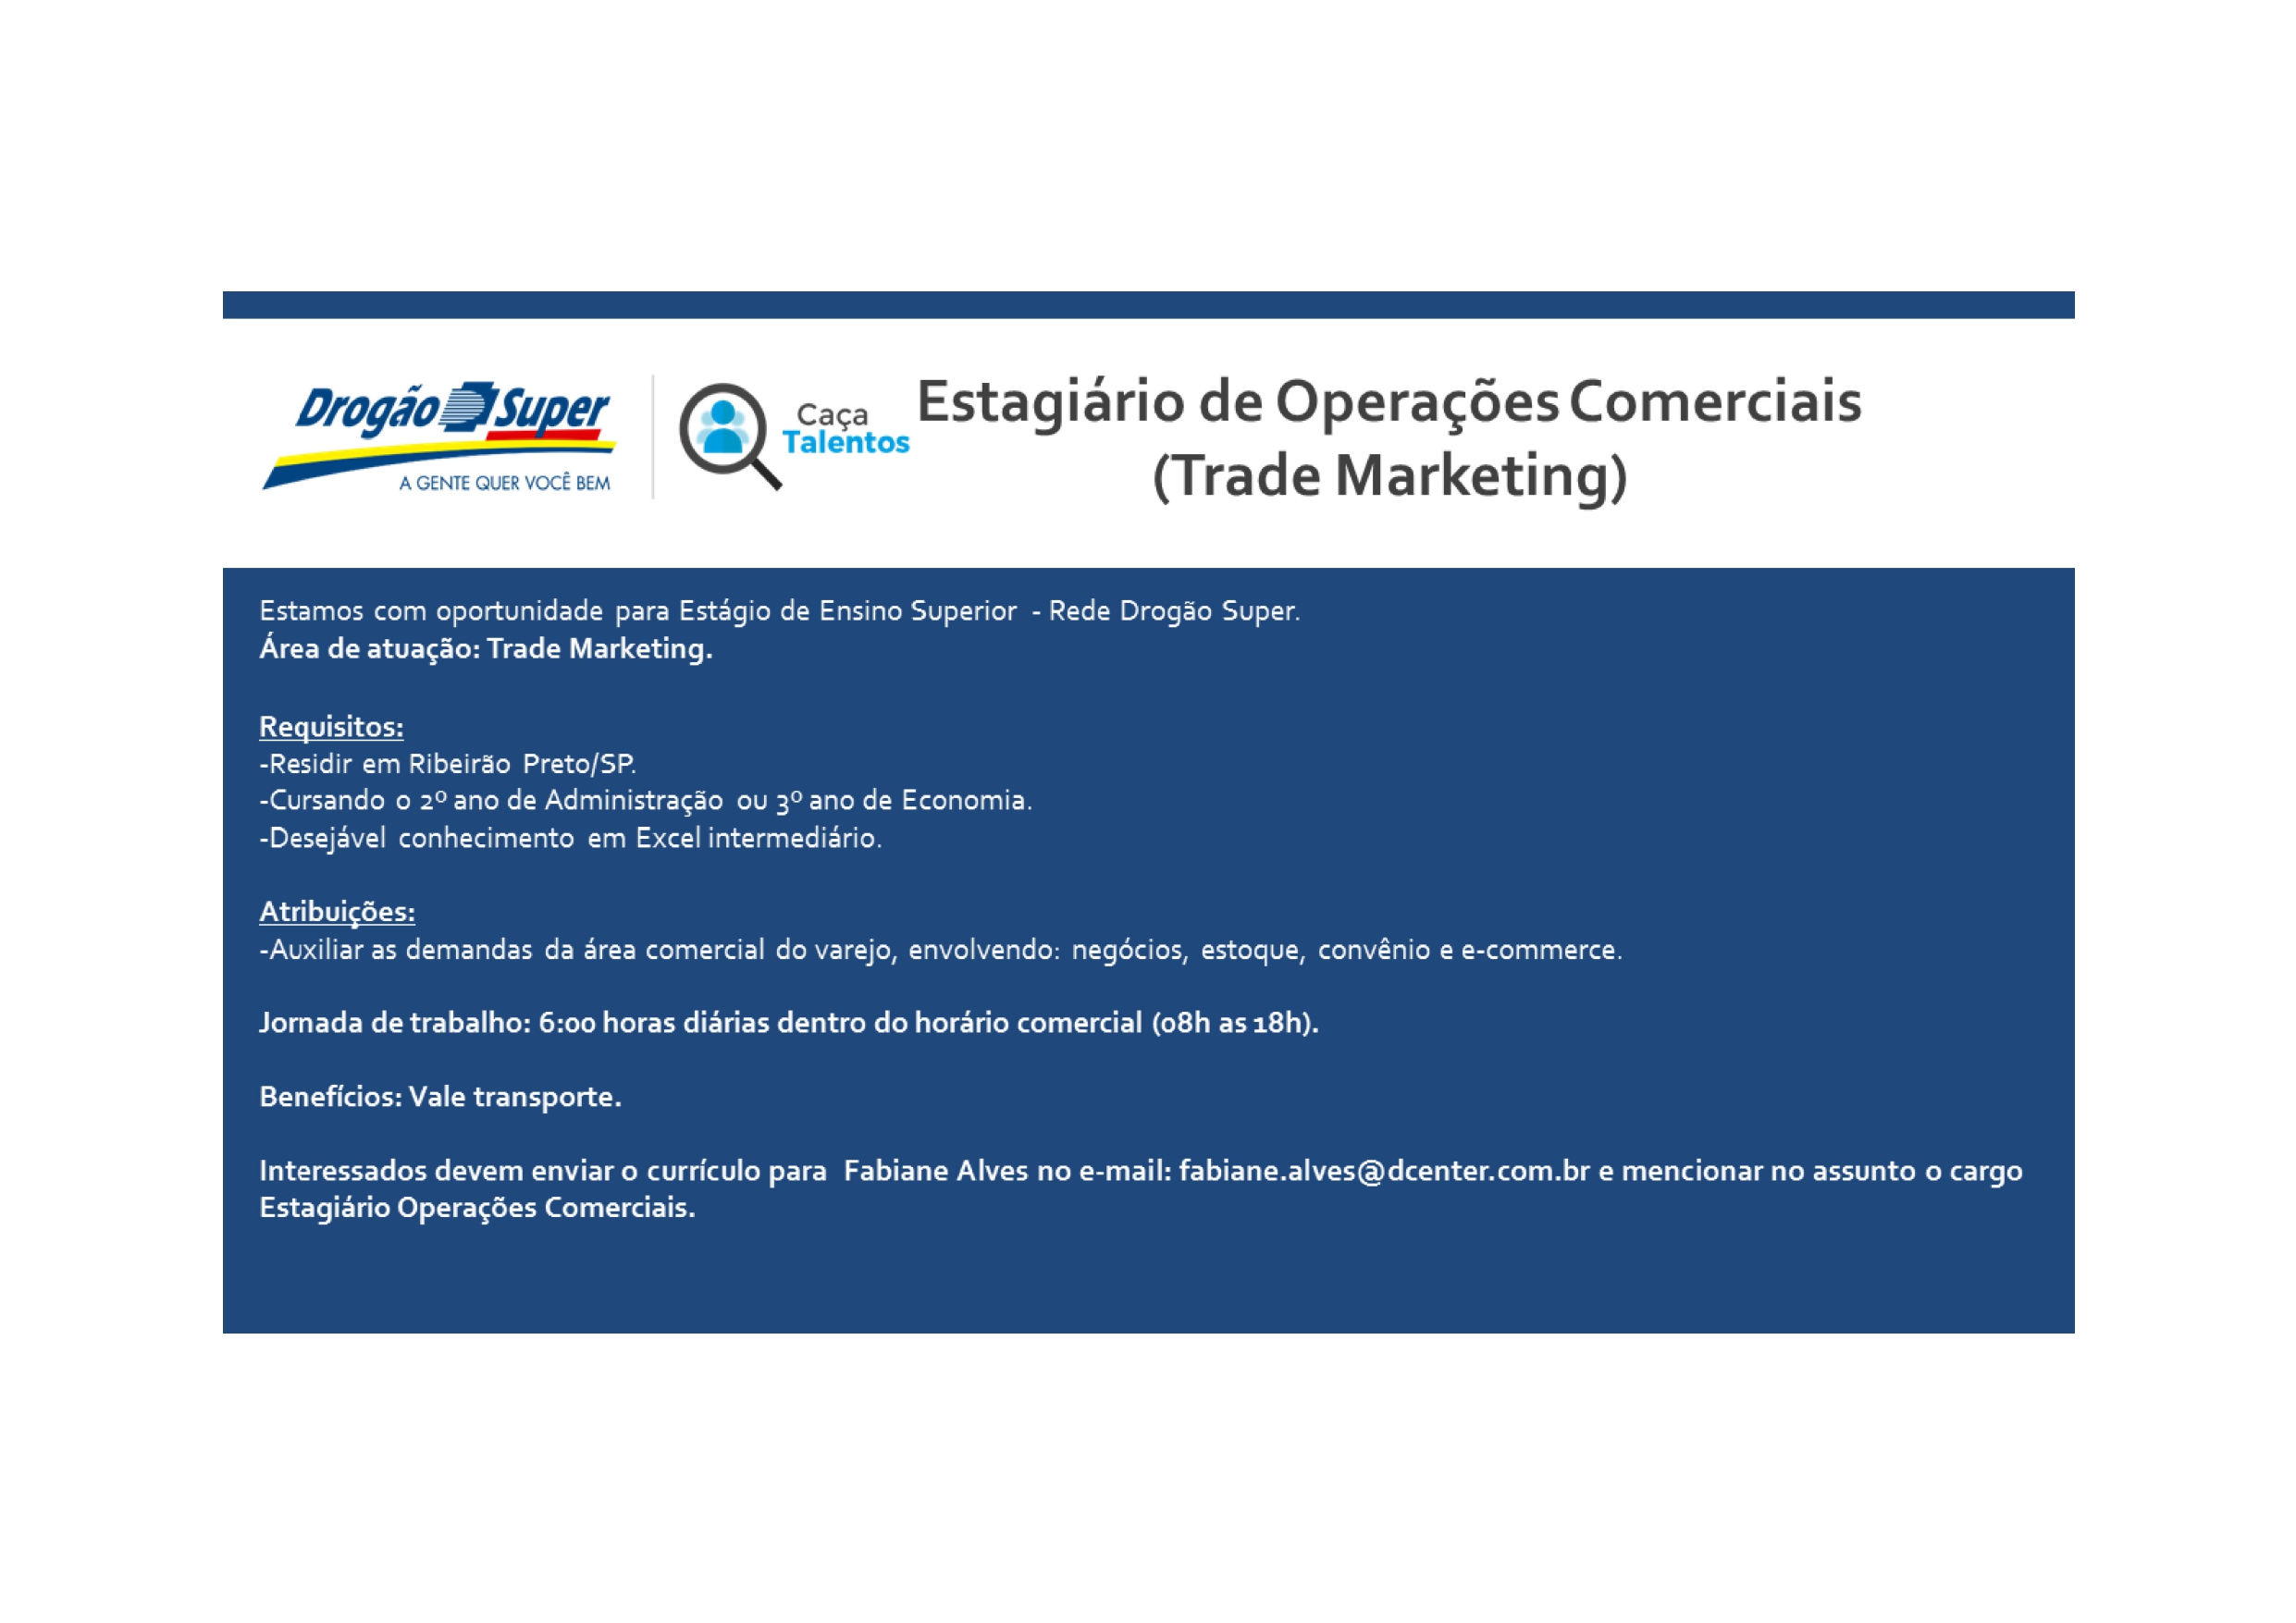 Drogão_Super_Estagiário_em_Operações_do_varejo_trade_marketing_page-0001.jpg